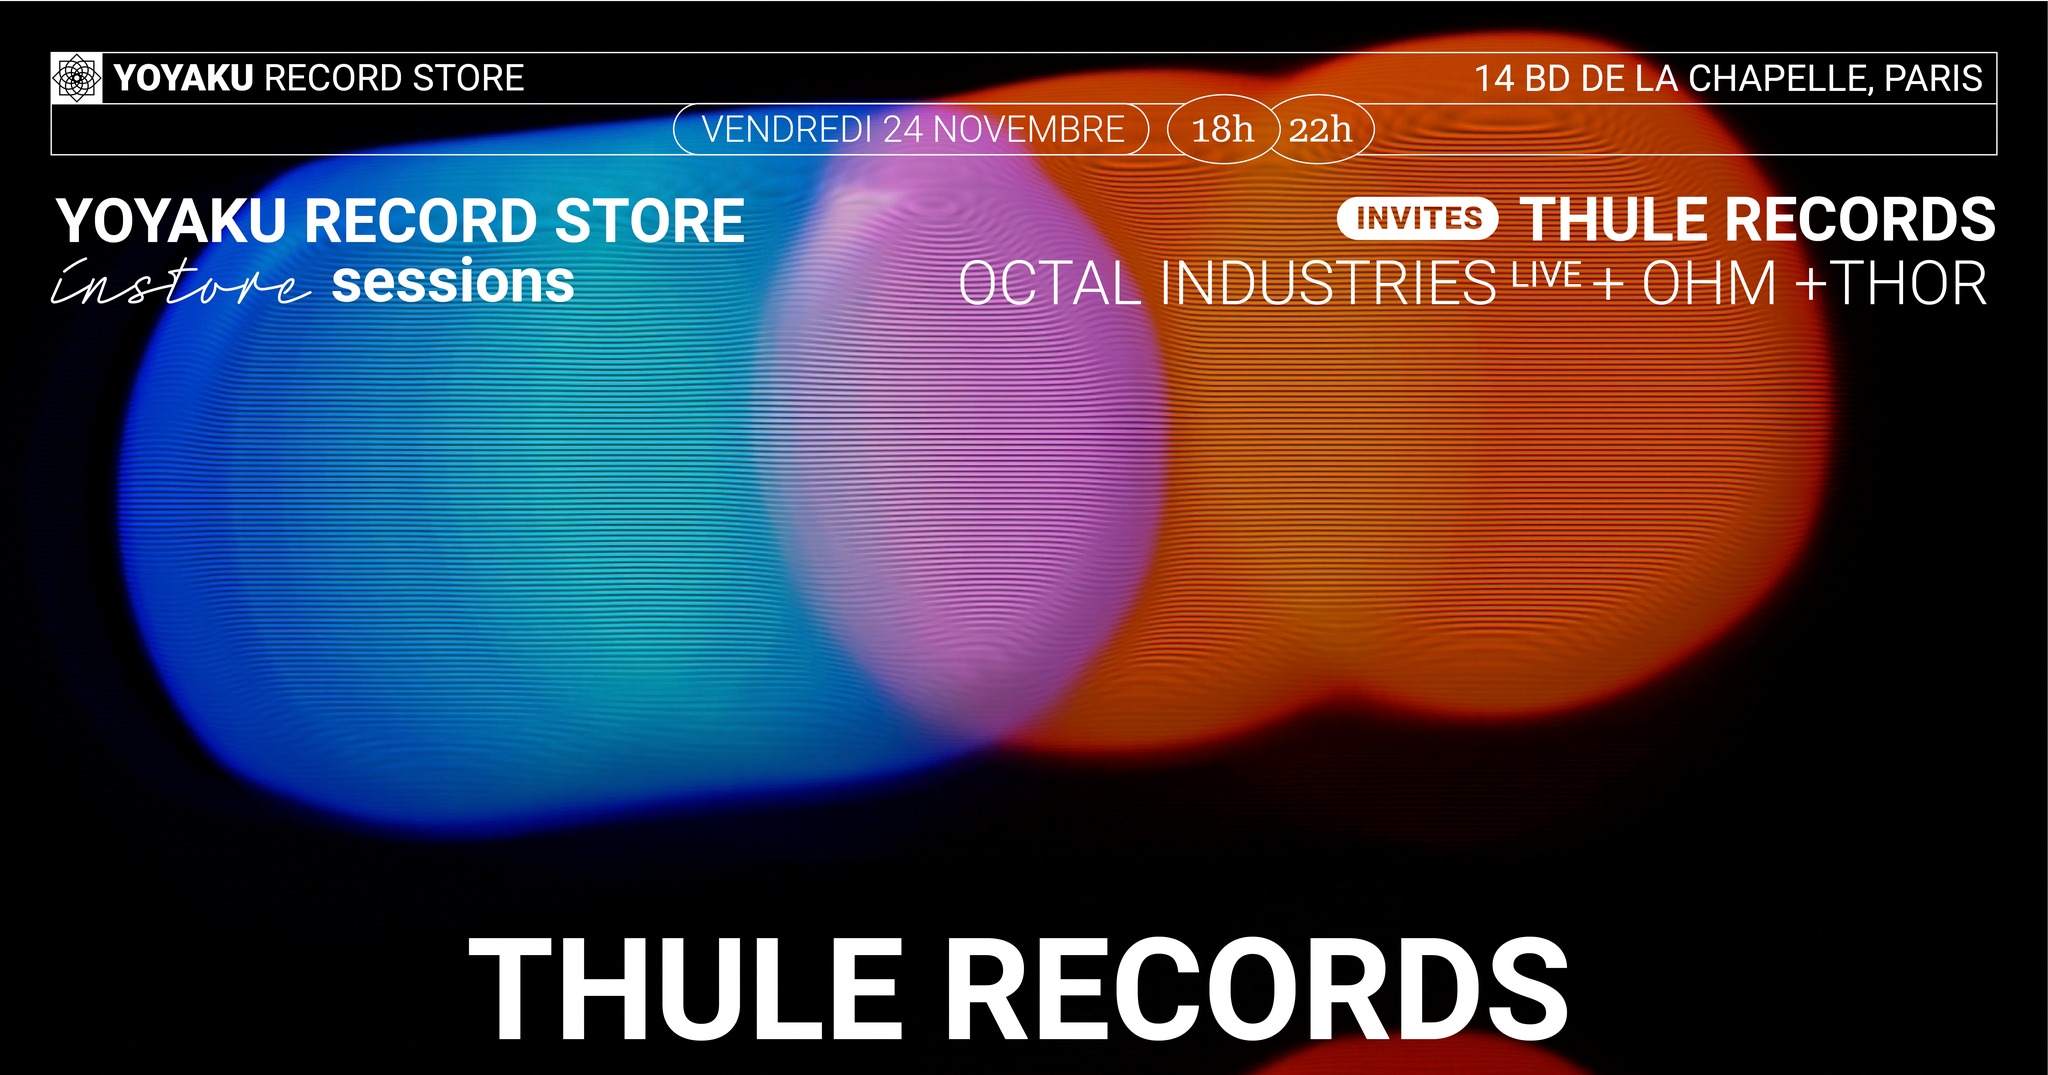 Thule Records at Yoyaku Record Store - Página frontal